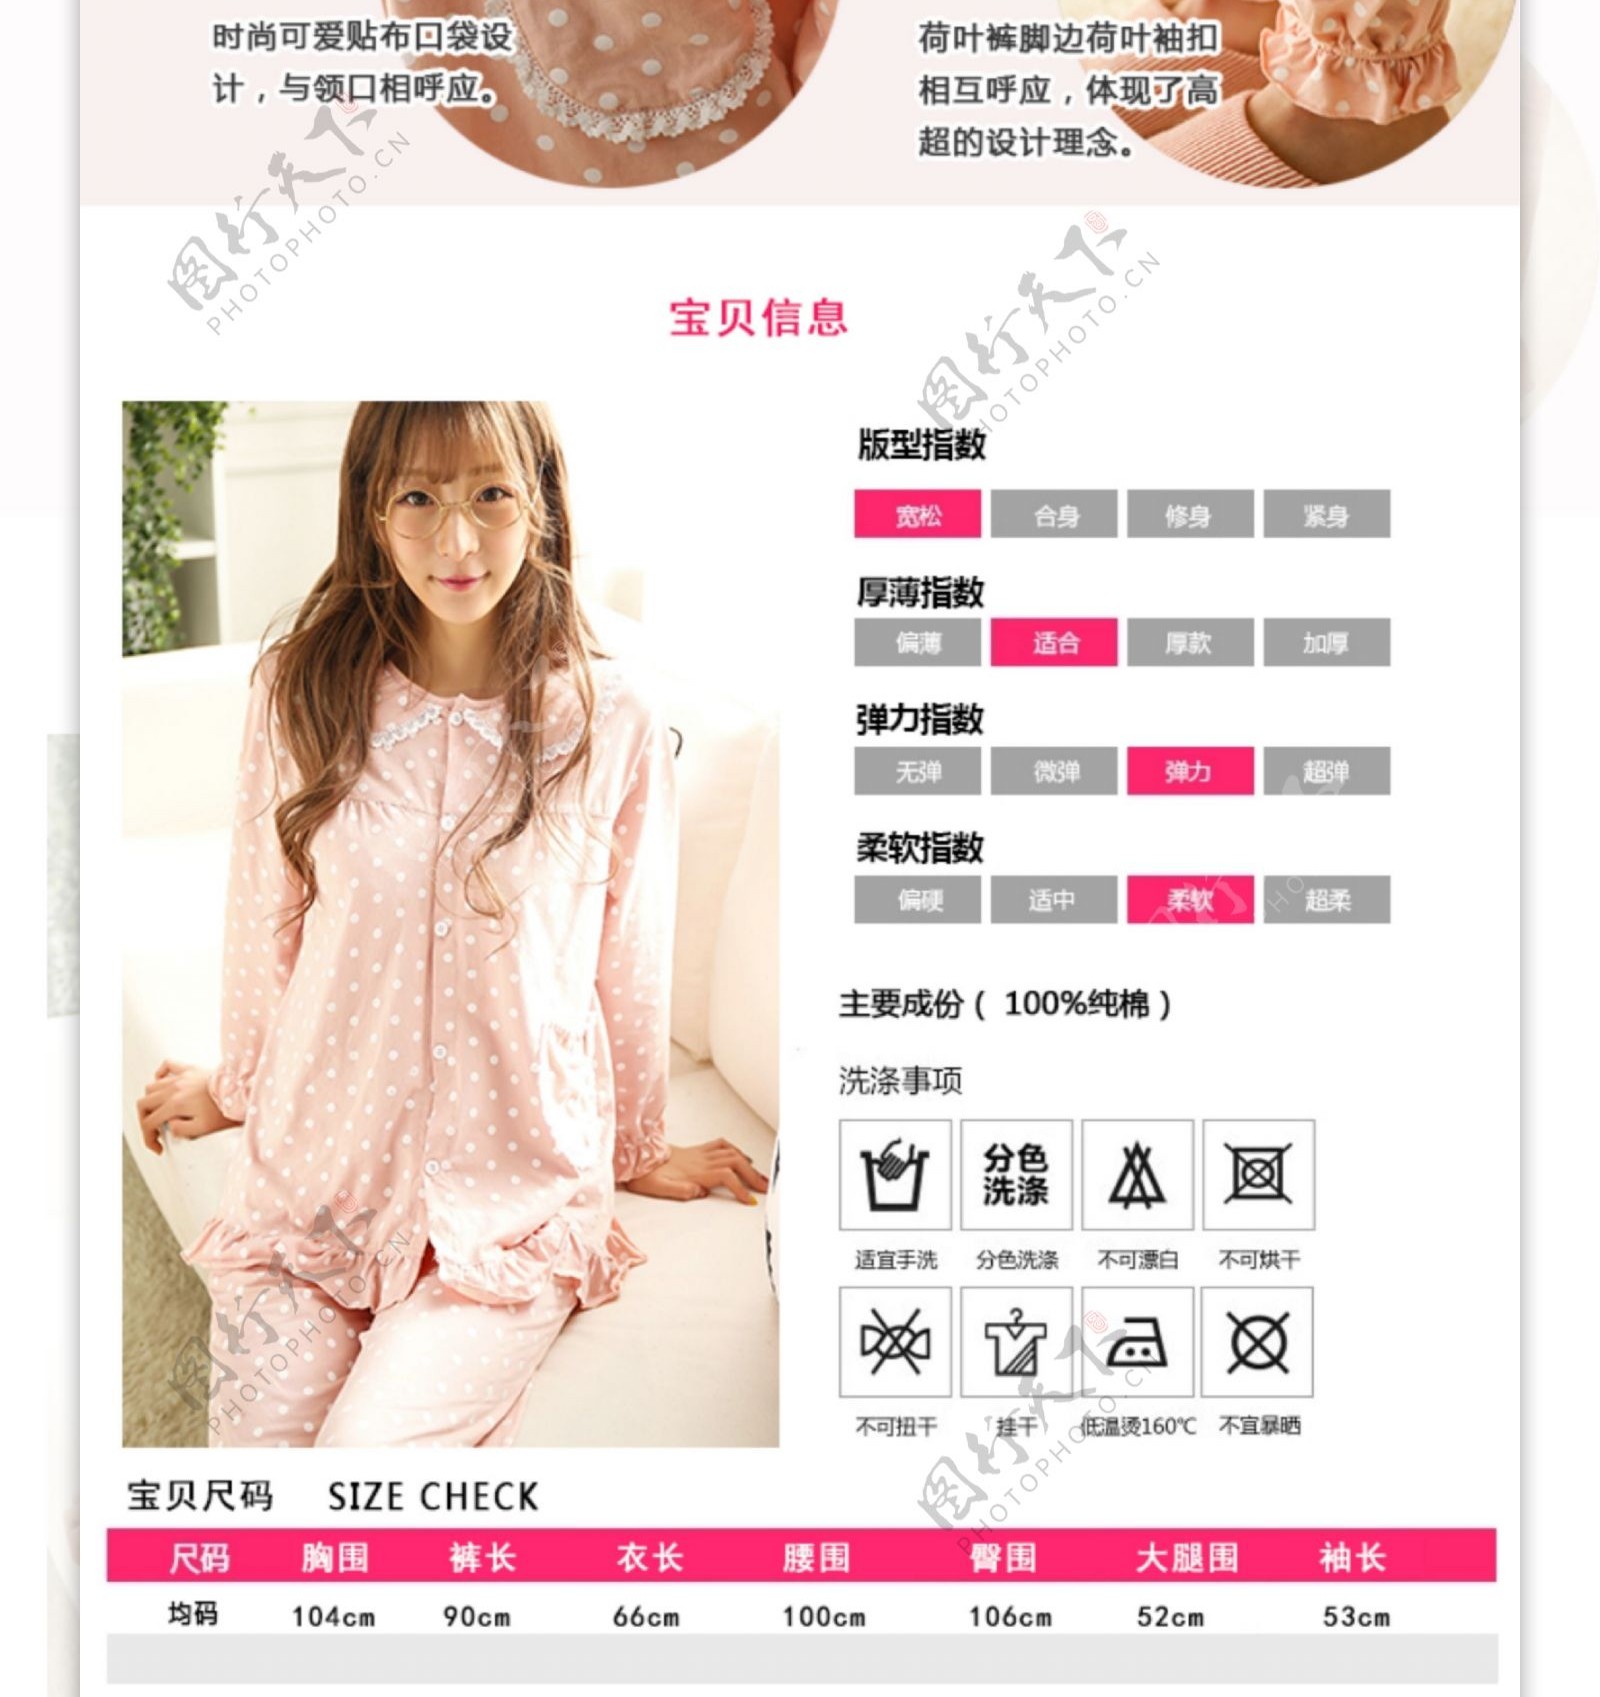 淘宝韩版家居服套装详情页设计